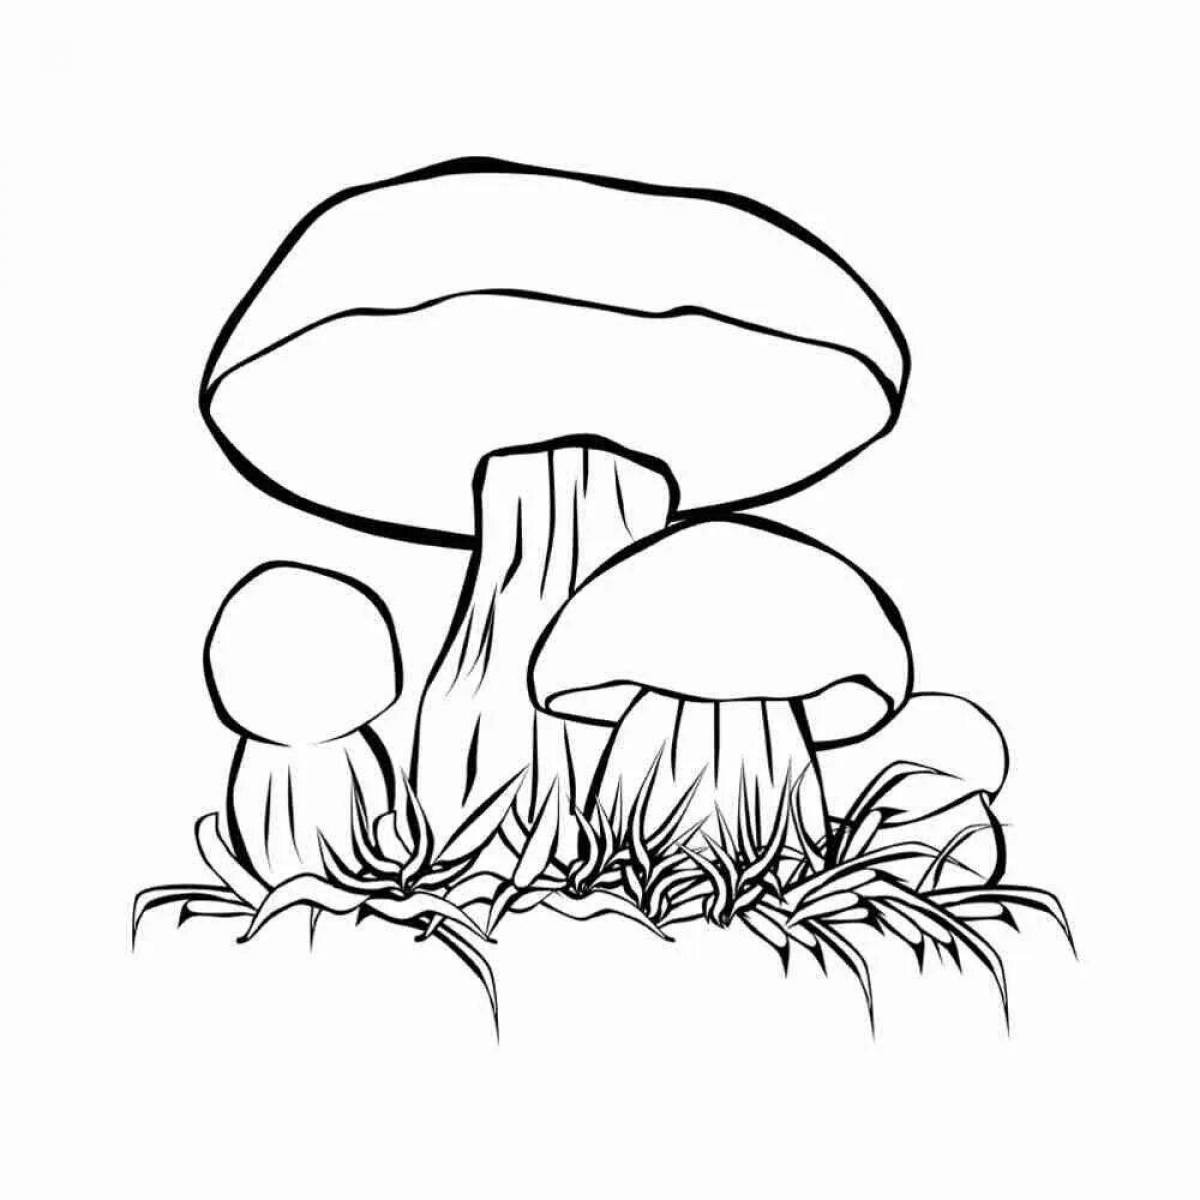 Cute porcini mushroom coloring book